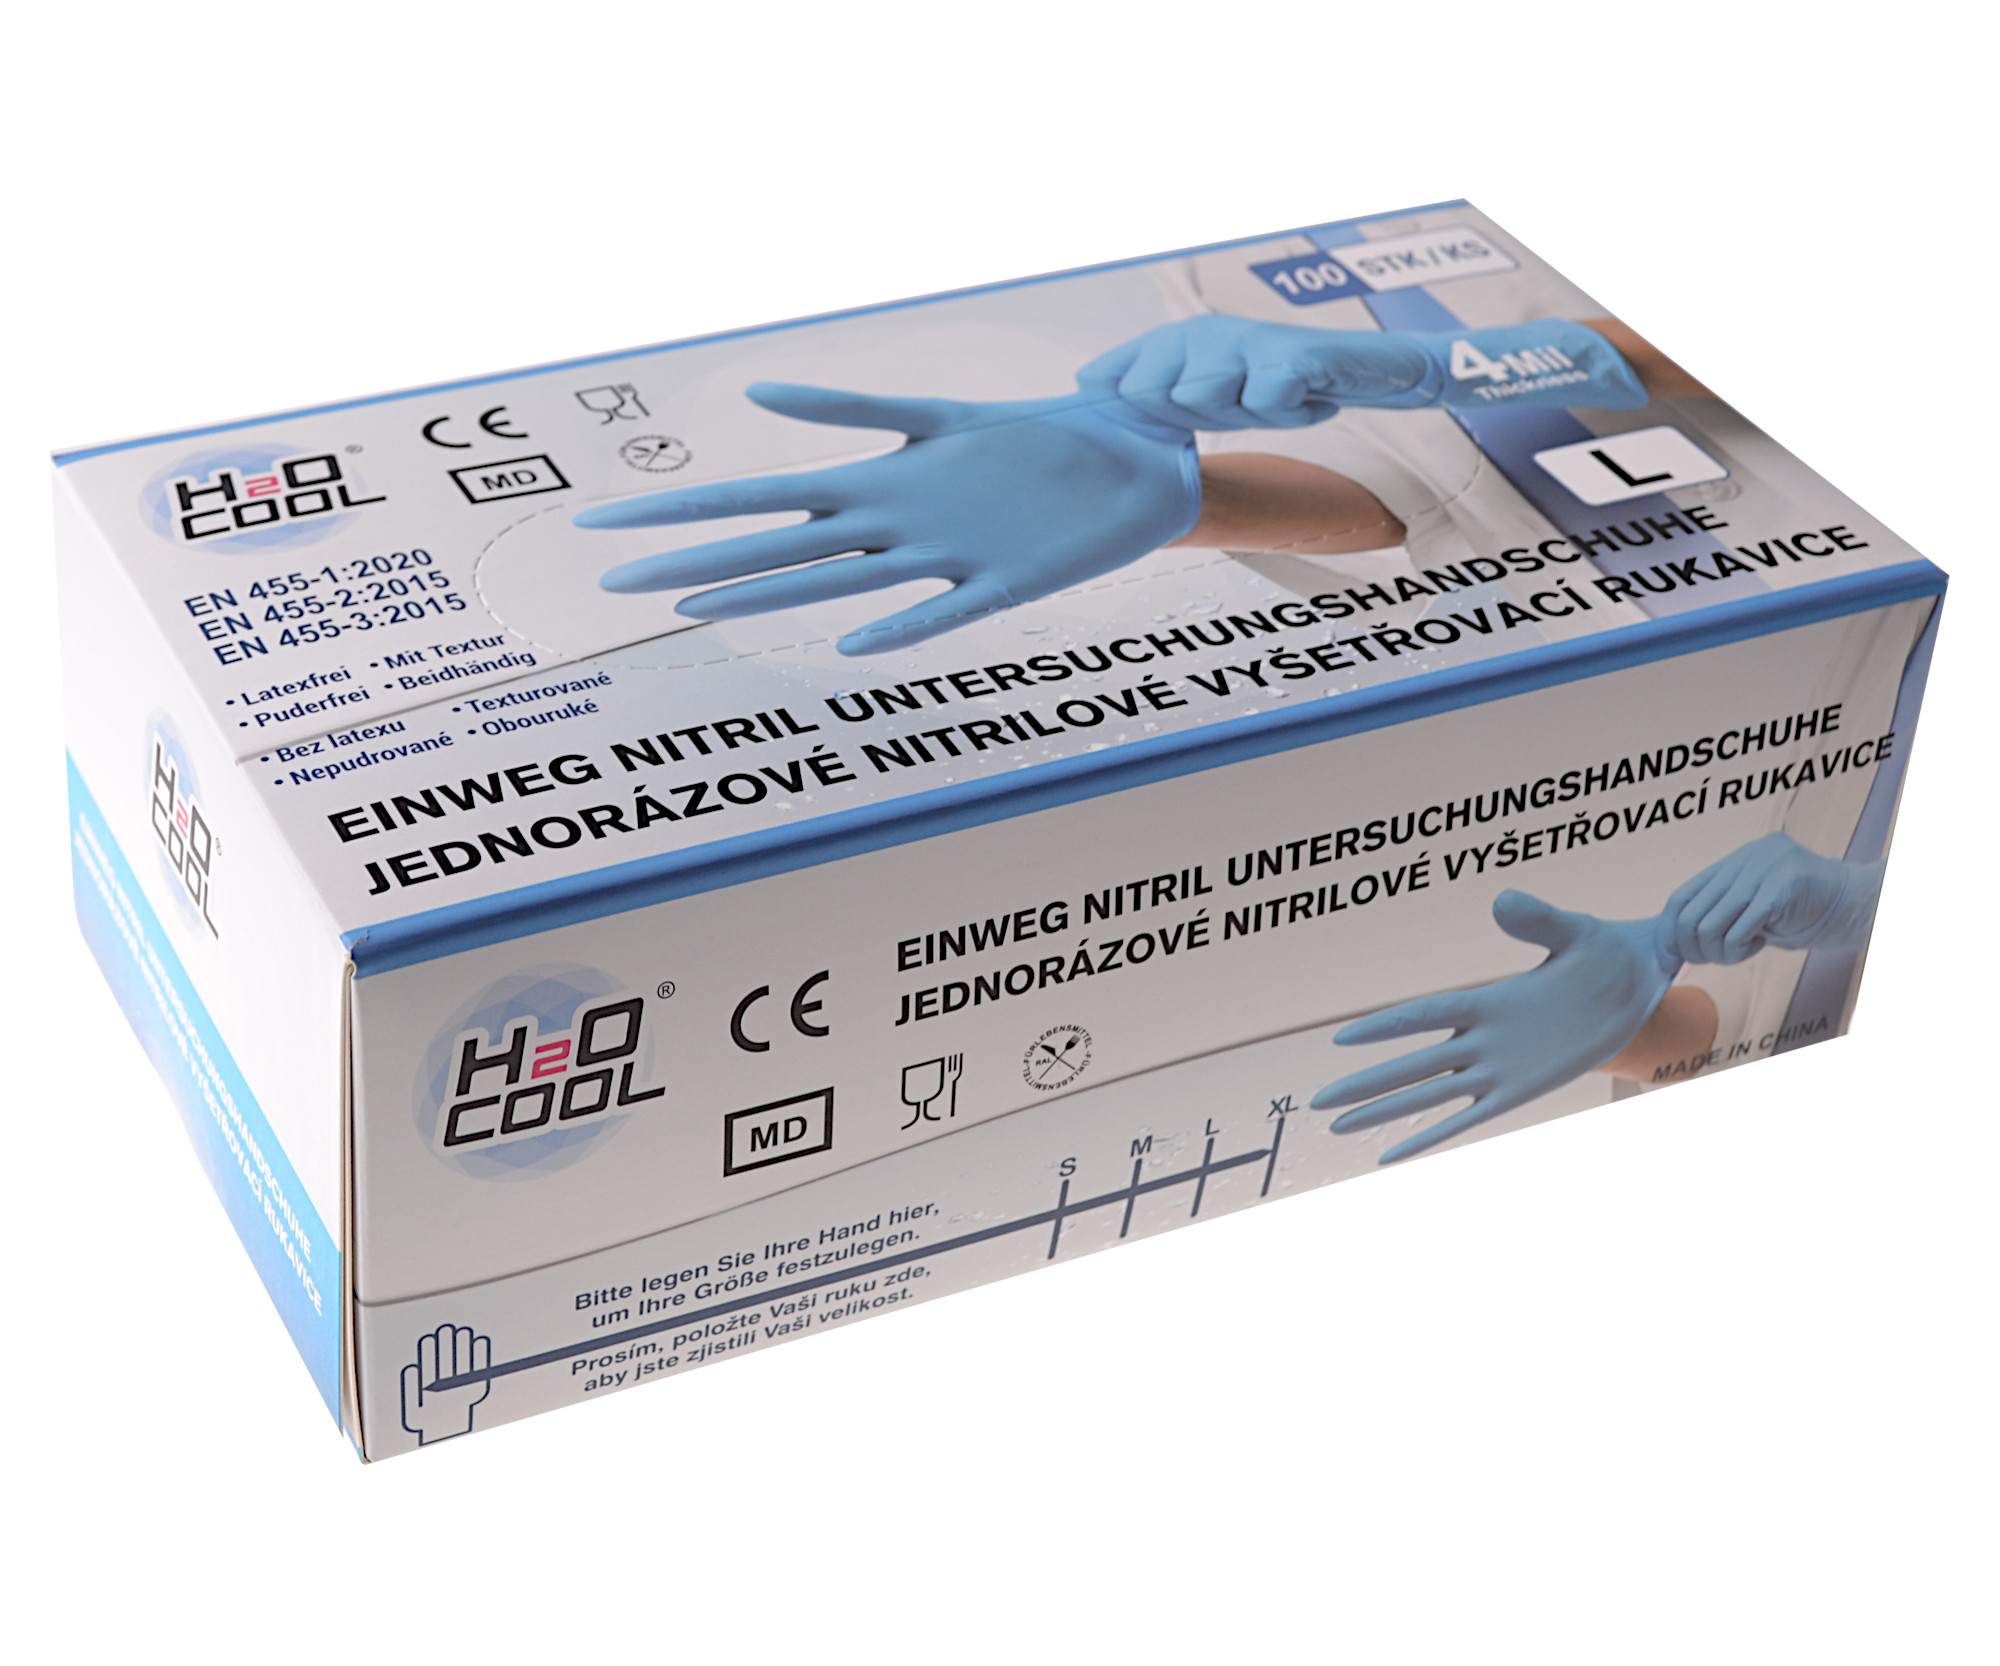 Jednorázové nitrilové rukavice H2O COOL 100 ks - L + DÁREK ZDARMA